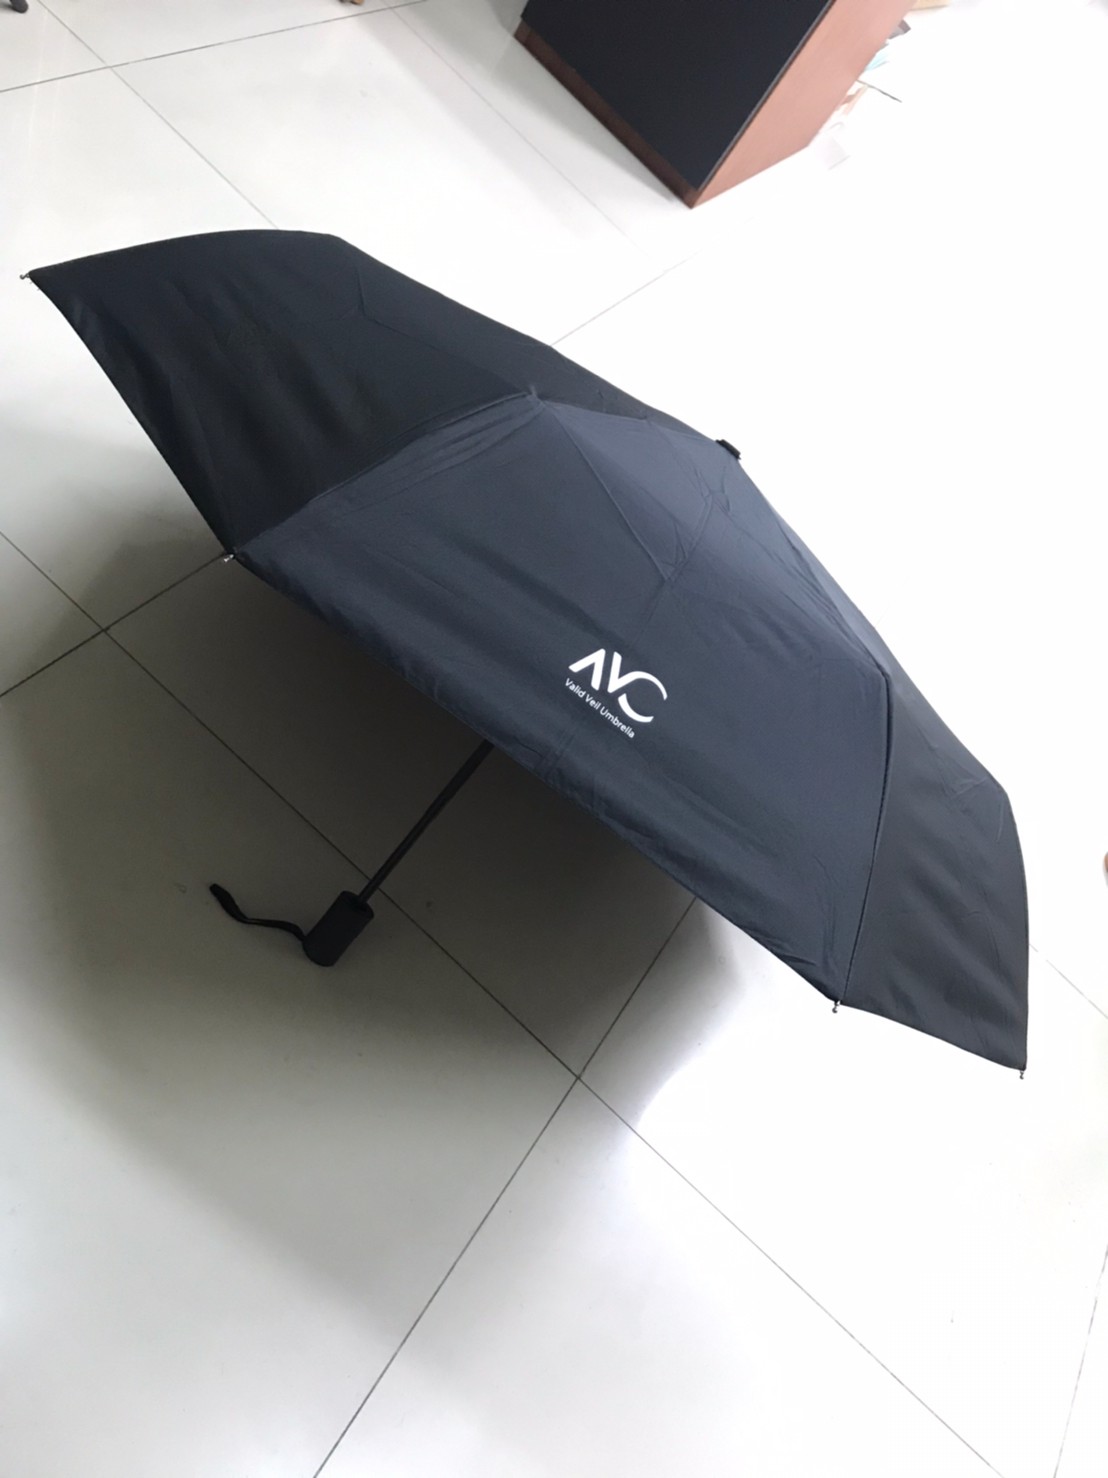 ร่มกันฝน Umbrella ร่มพับได้ ร่มแคปซูล ร่มแฟชั่น พกพาง่าย มีสีดำ  สีเขียวเข้ม สีชมพู สีขาว ขนาดของร่มยาว 26*96*65 cm. ด้ามจับมีความแข็งแรงทนทาน-VAC